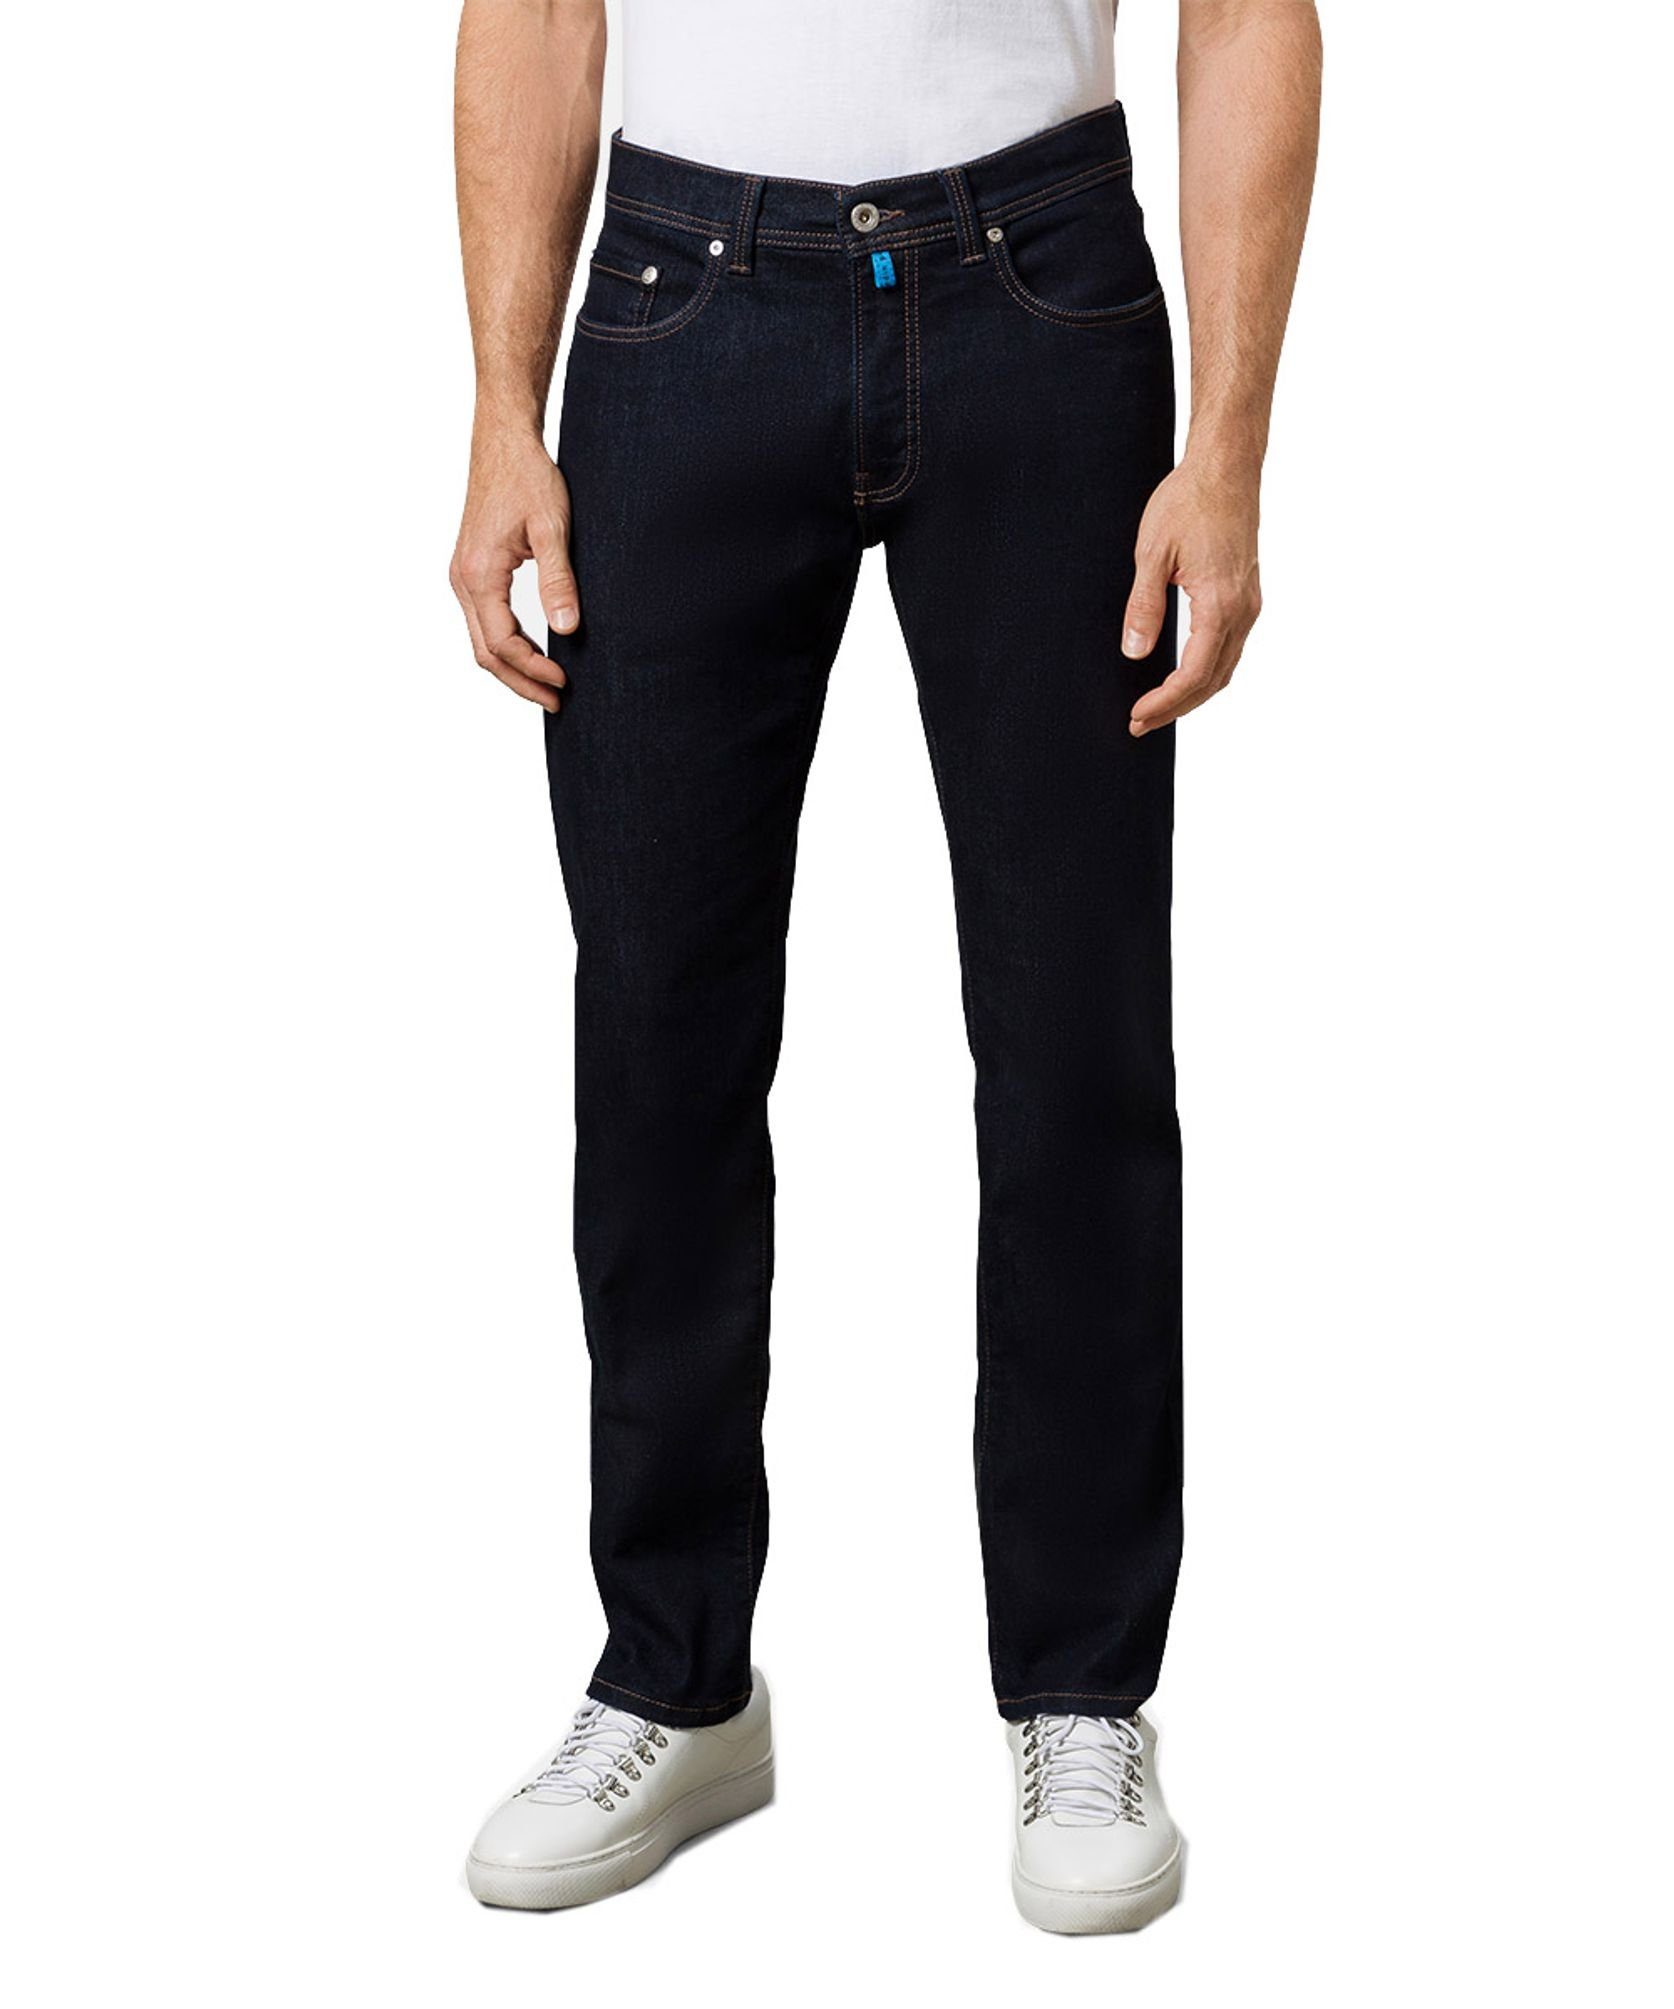 Pierre Cardin 5-Pocket-Jeans C7 34510.8007 stabil